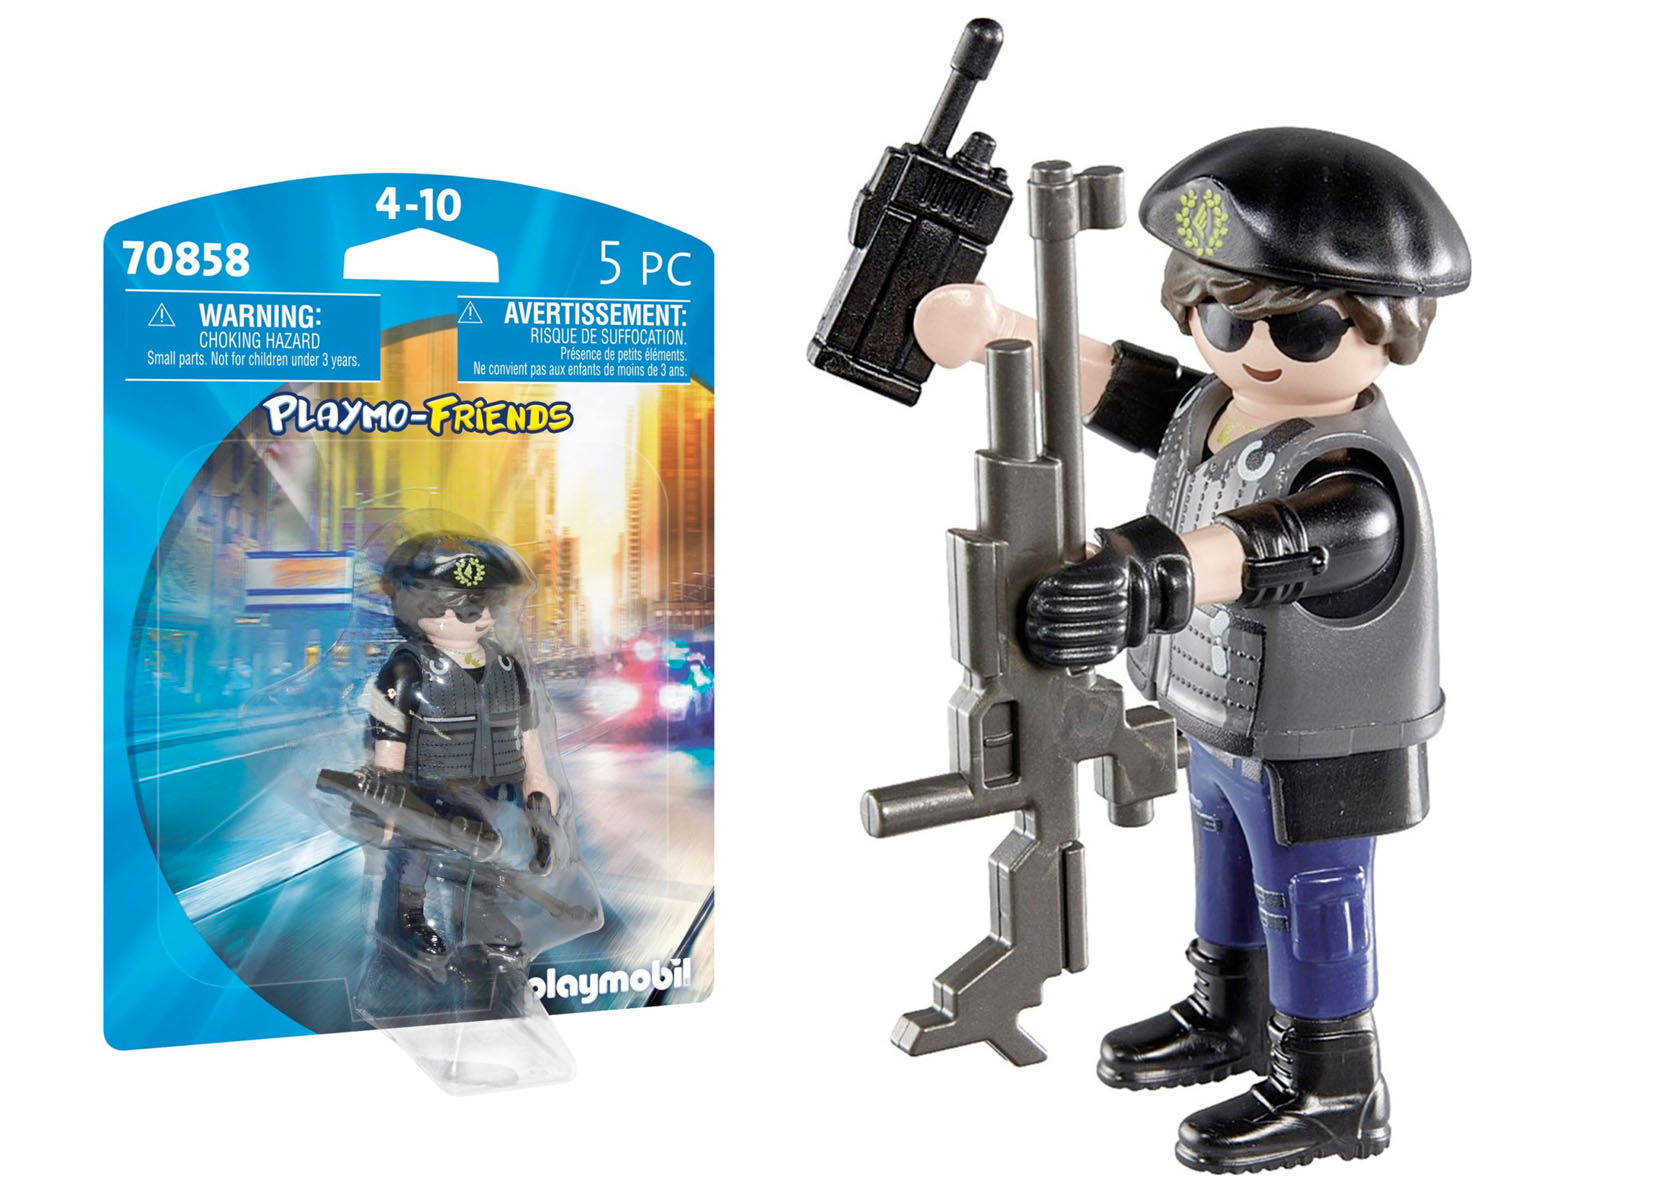 Playmobil 70858 Playmo-Friends Polizist